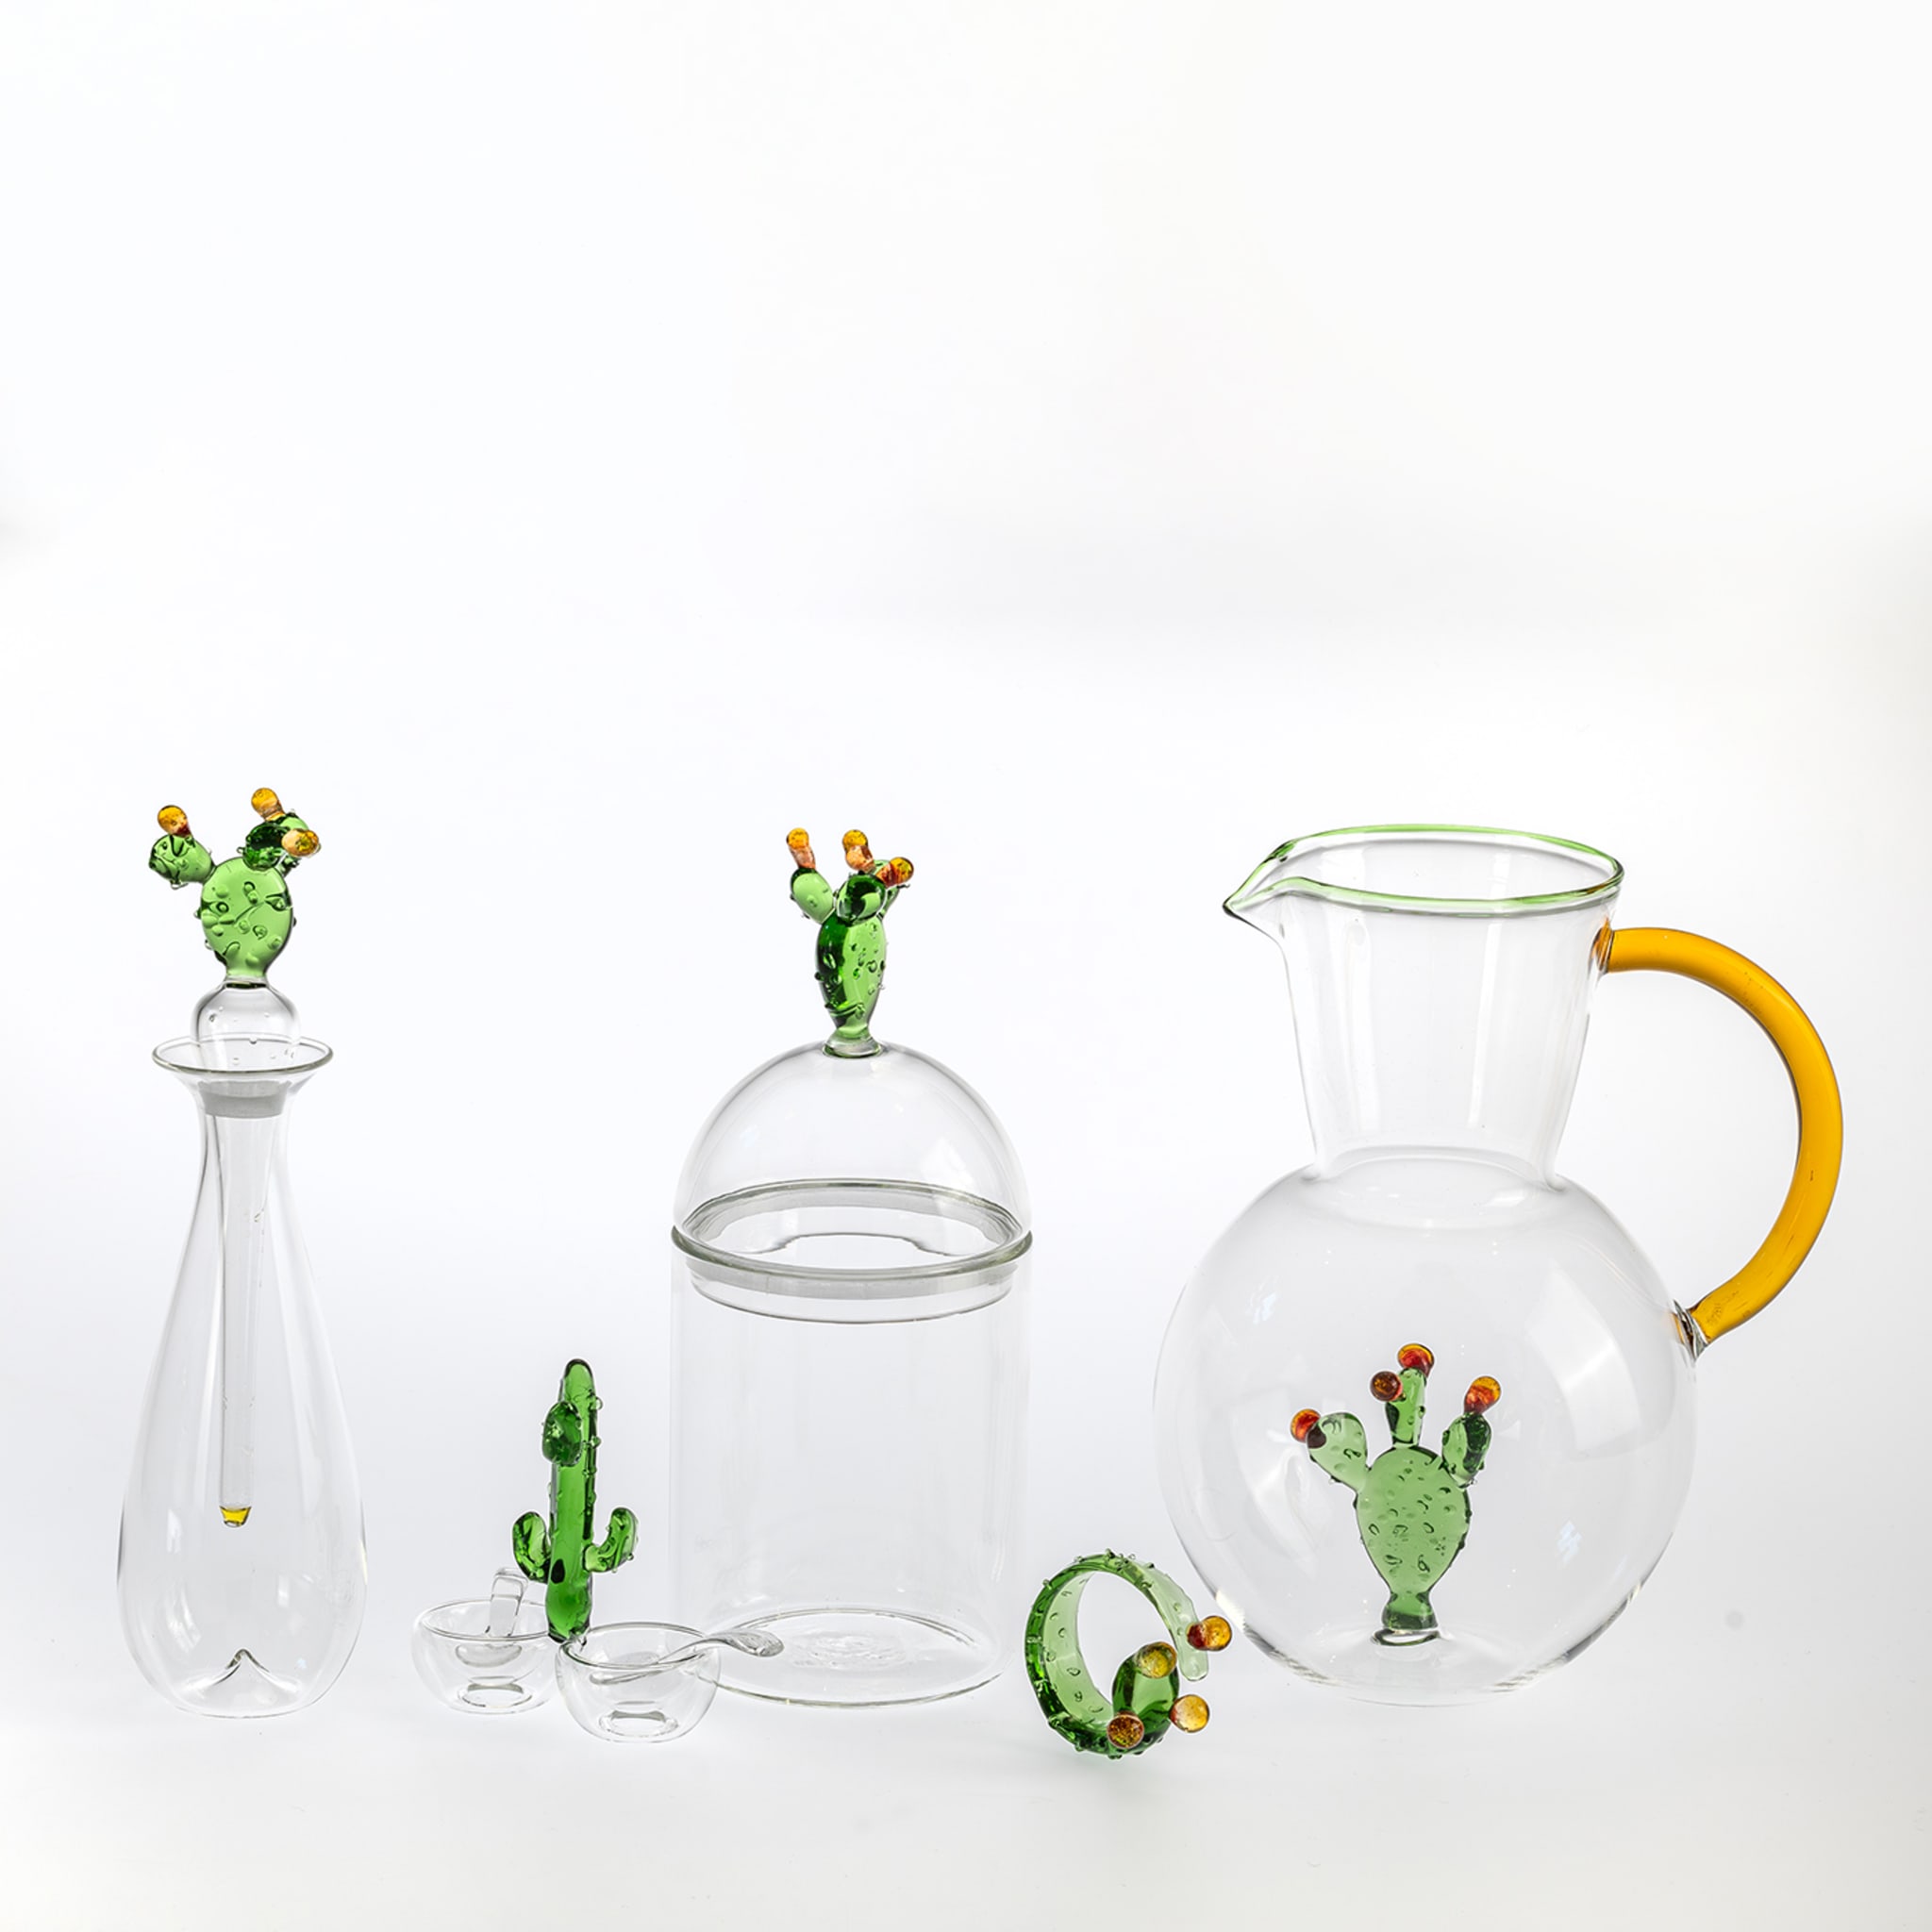 Portofino Handcrafted Glass Cactus Salt&Pepper Set  - Alternative view 3